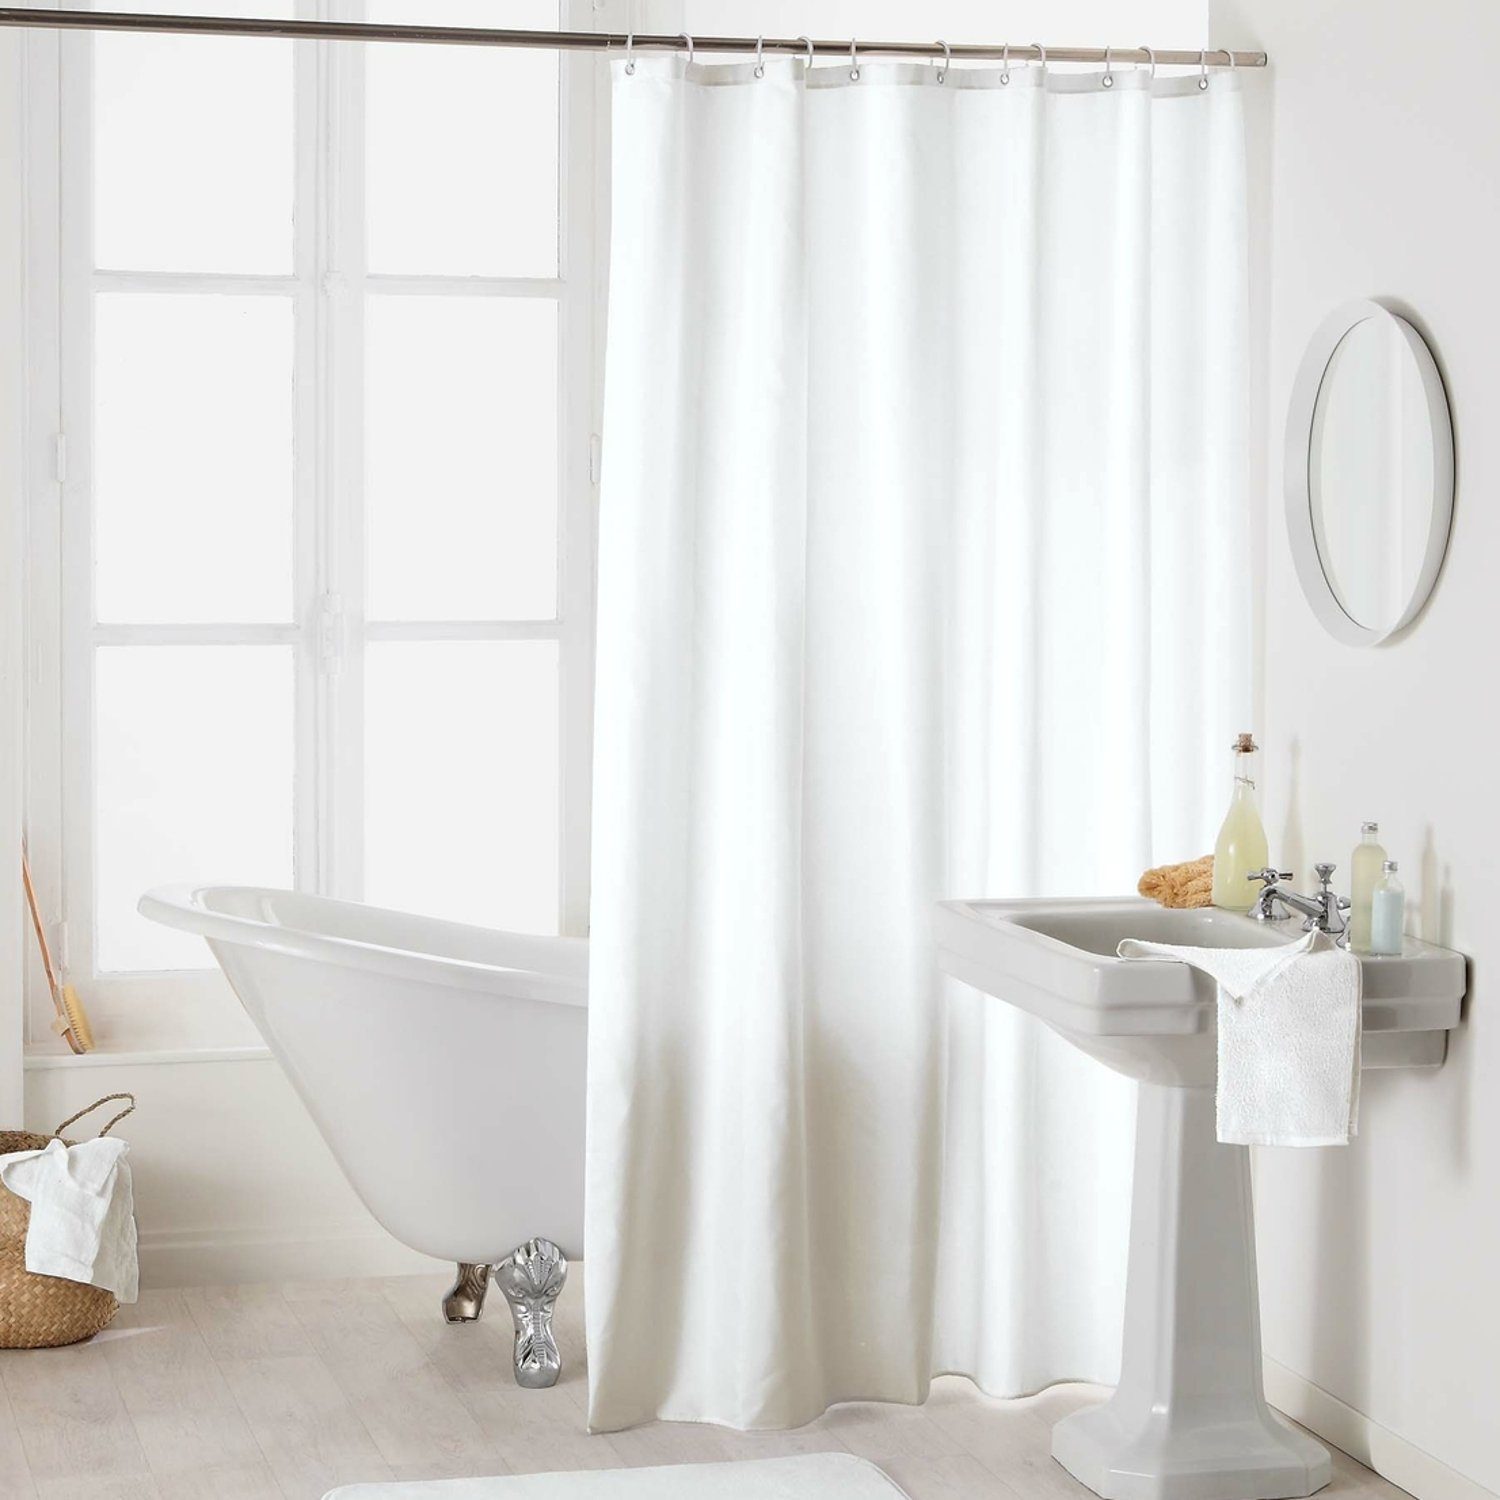 Sanixa Duschvorhang Breite 180 cm, Duschvorhang Textil 180x200 cm Uni Weiß  einfarbig wasserabweisend waschbar Badewannenvorhang Vorhang hochwertige  Qualität mit Ringen Metallösen